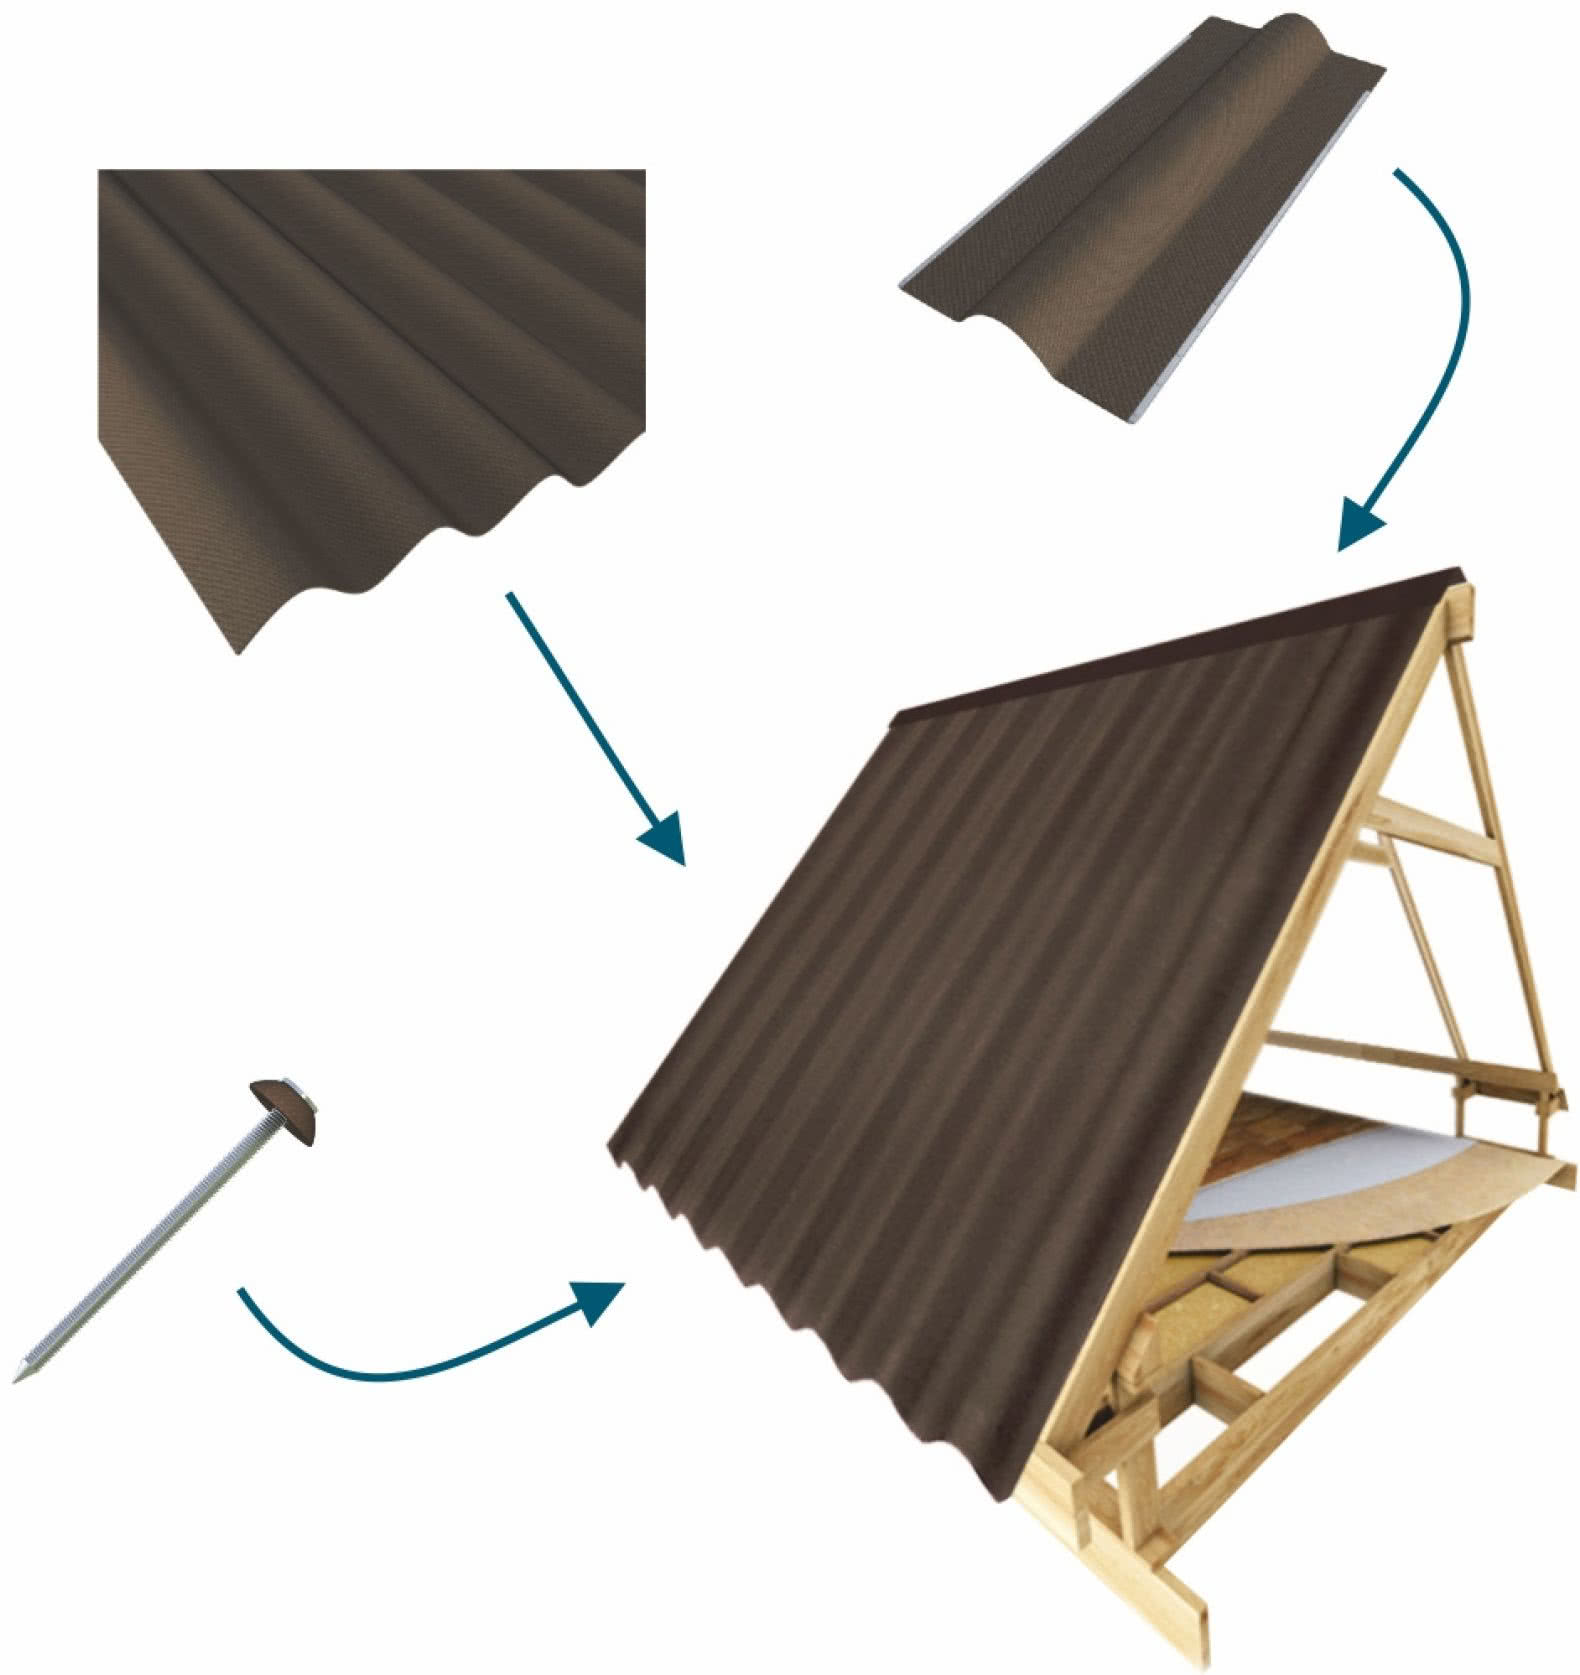 Faliste płyty bitumiczne - lekkie, wytrzymałe i łatwe w montażu pokrycie dachowe. fot. Robelit